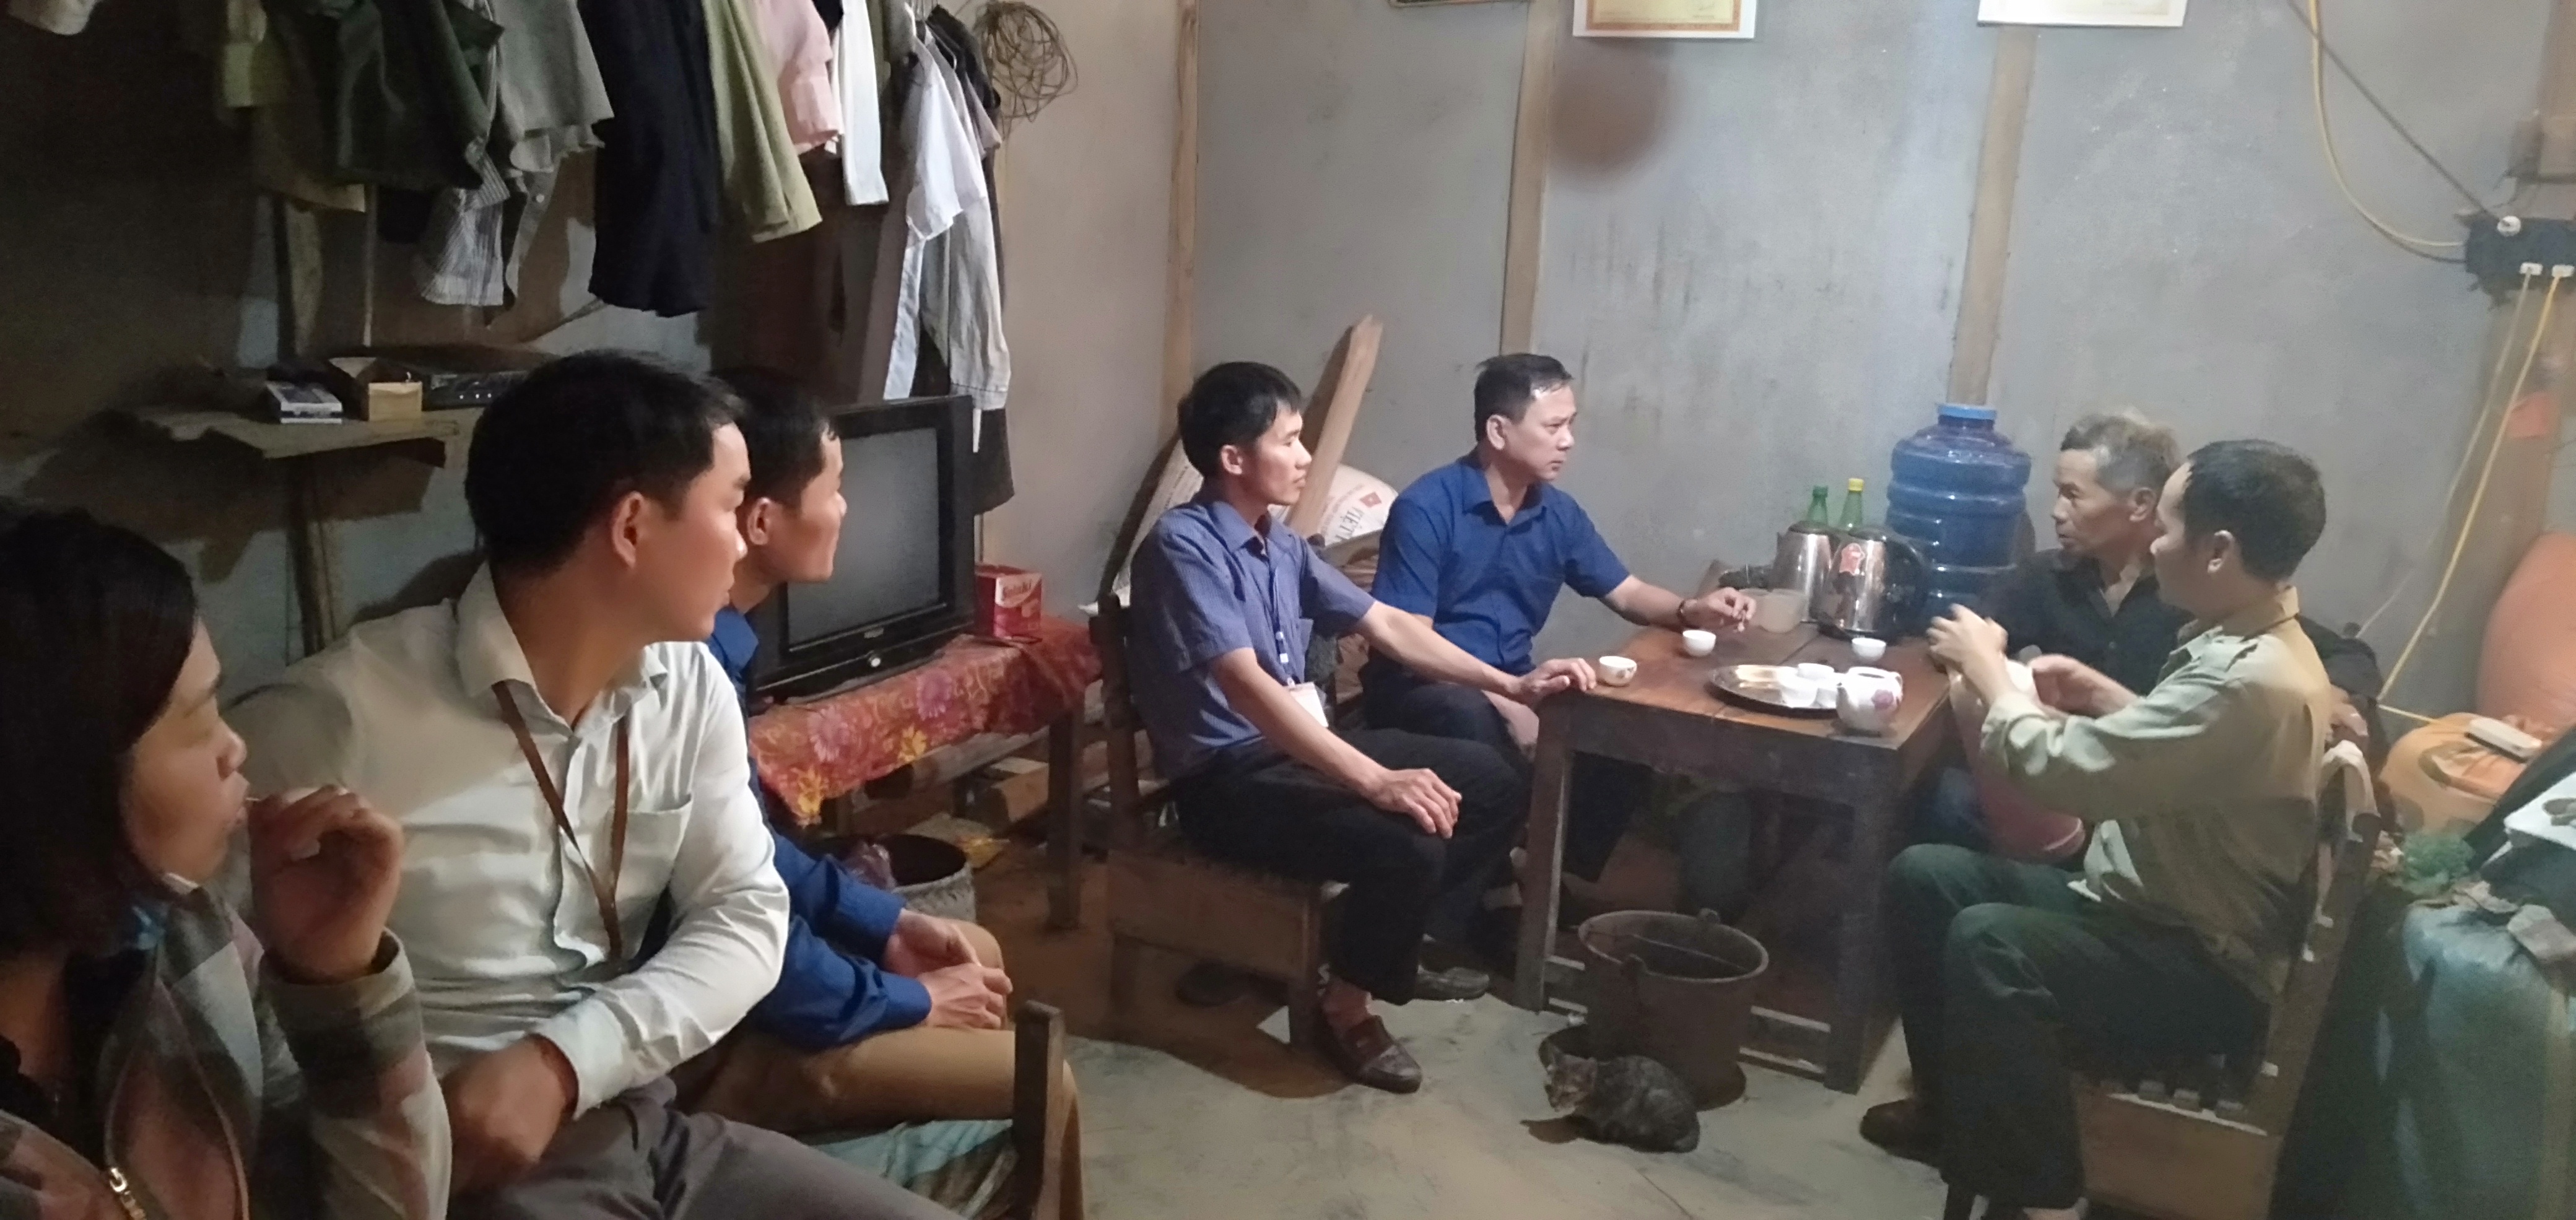 Đồng chí Nguyễn Đức Hà - Trưởng ban tuyên giáo huyện ủy, Giám đốc trung tâm bồi dưỡng chính trị Huyện Bắc Quang kiểm tra tiến độ xây dựng nhà ở cho người có công tại xã Đồng Tâm